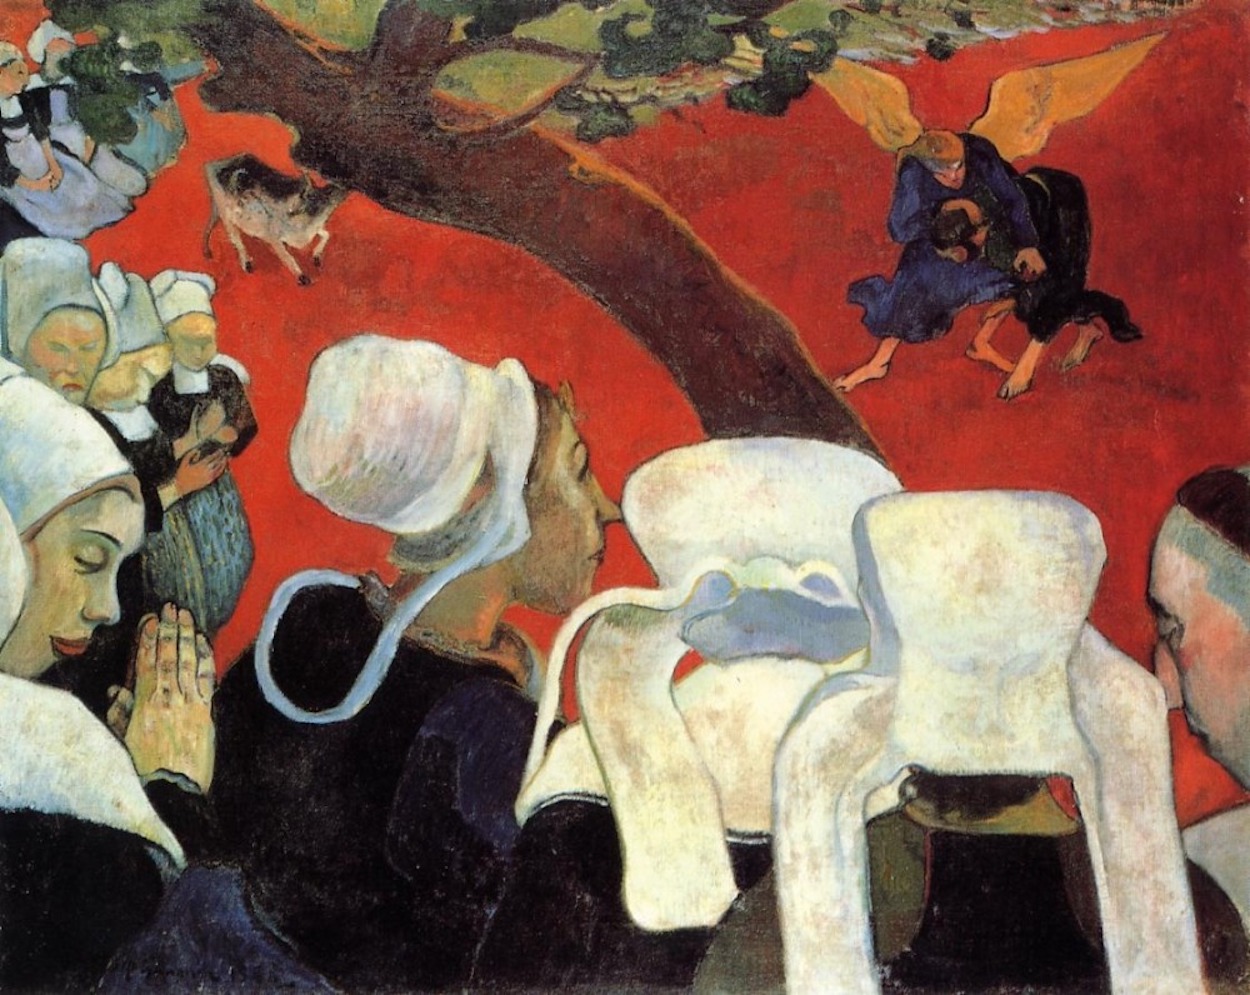 La visión tras el sermón by Paul Gauguin - 1888 - 74.4 x 93.1 cm Las Galerías Nacionales de Escocia